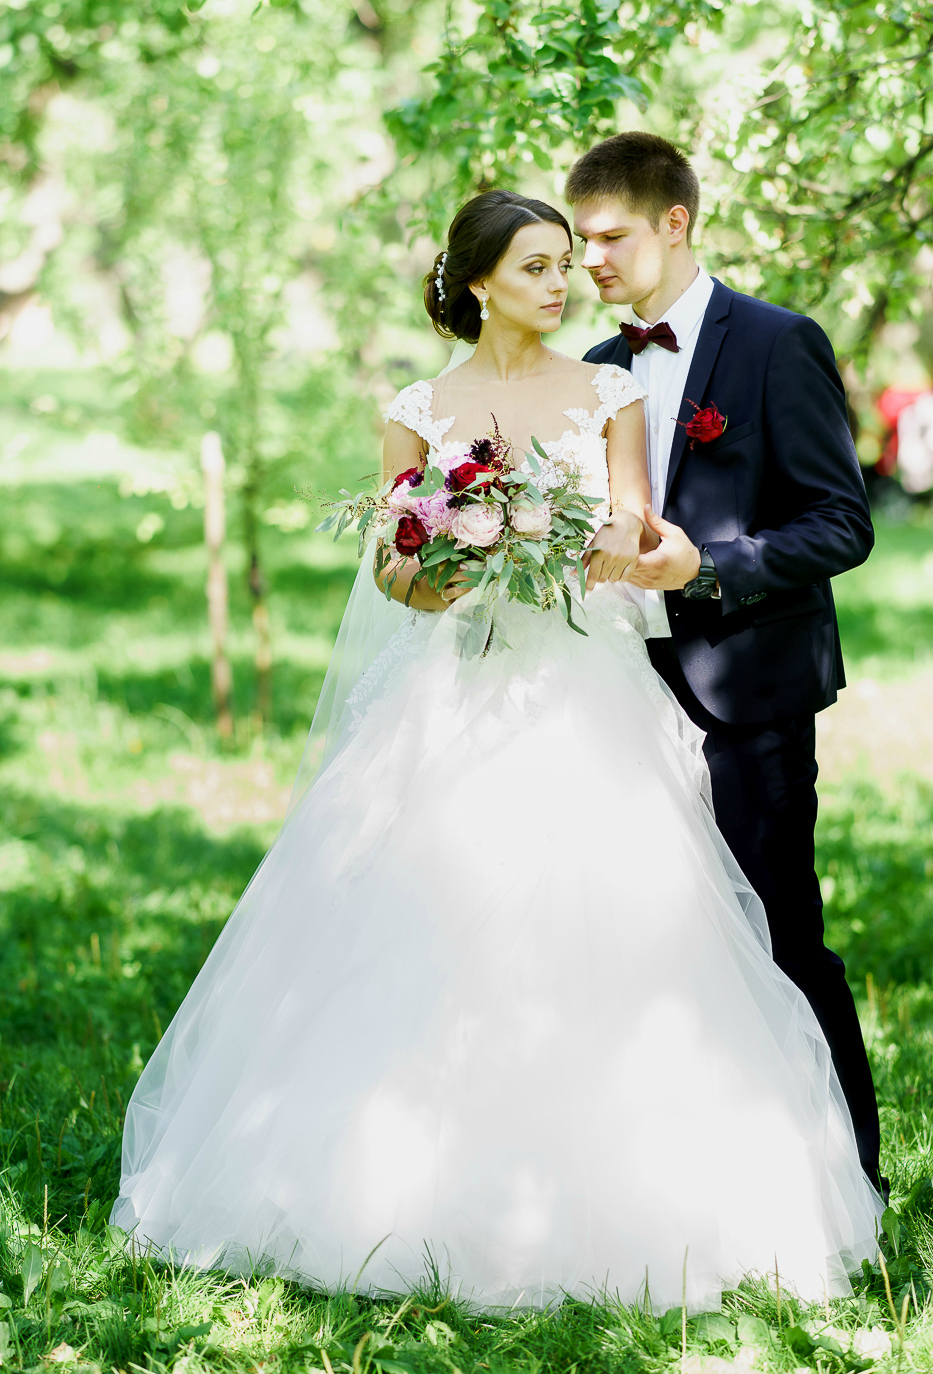 Яркая свадьба Сергея и Марины в яблоневом саду